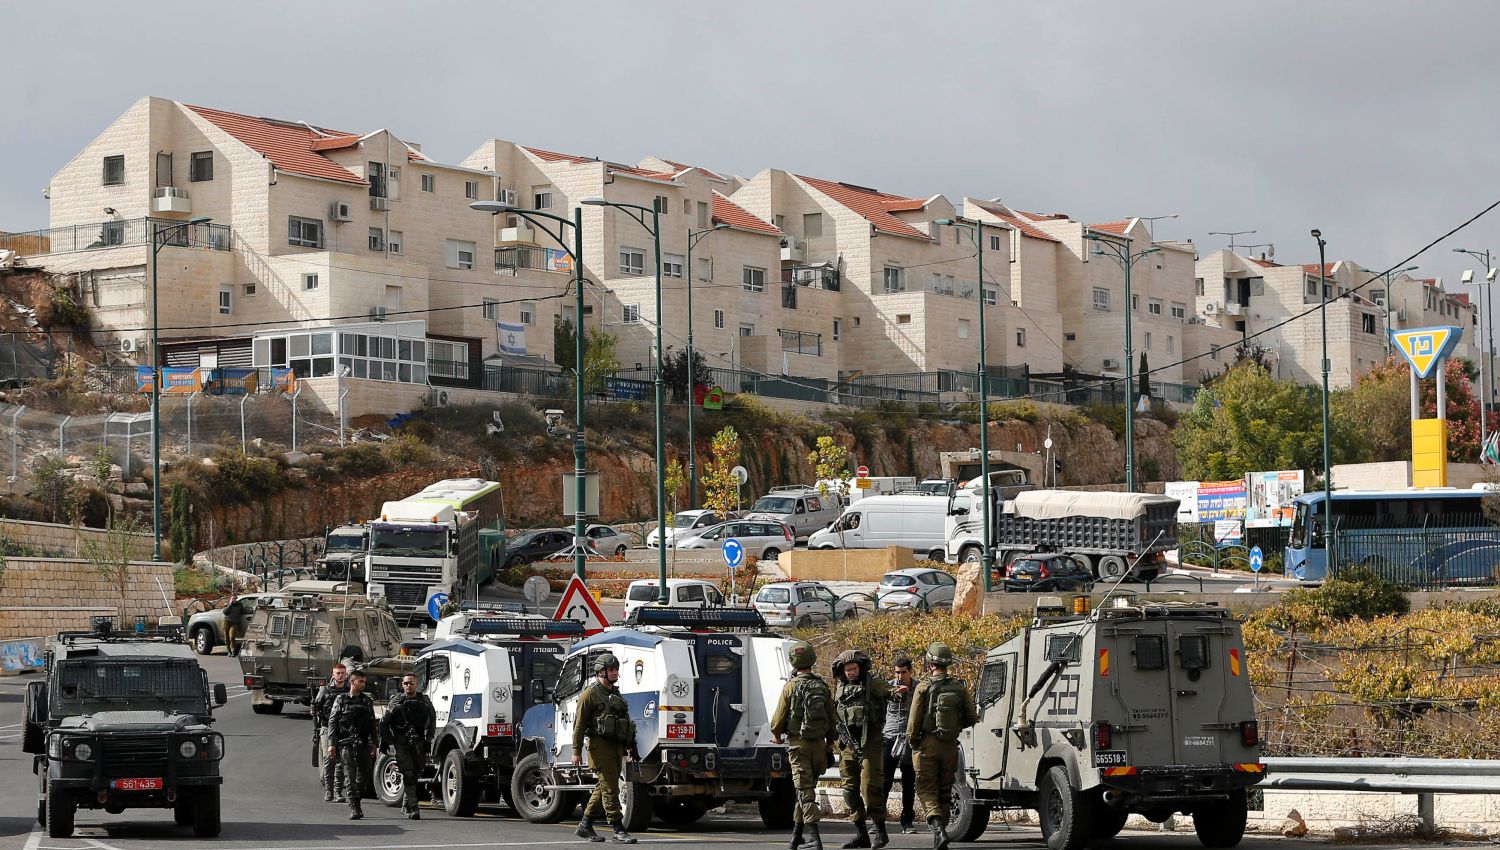 معاريف: حالات العنف في إسرائيل تجعل الحياة فيها غير آمنة